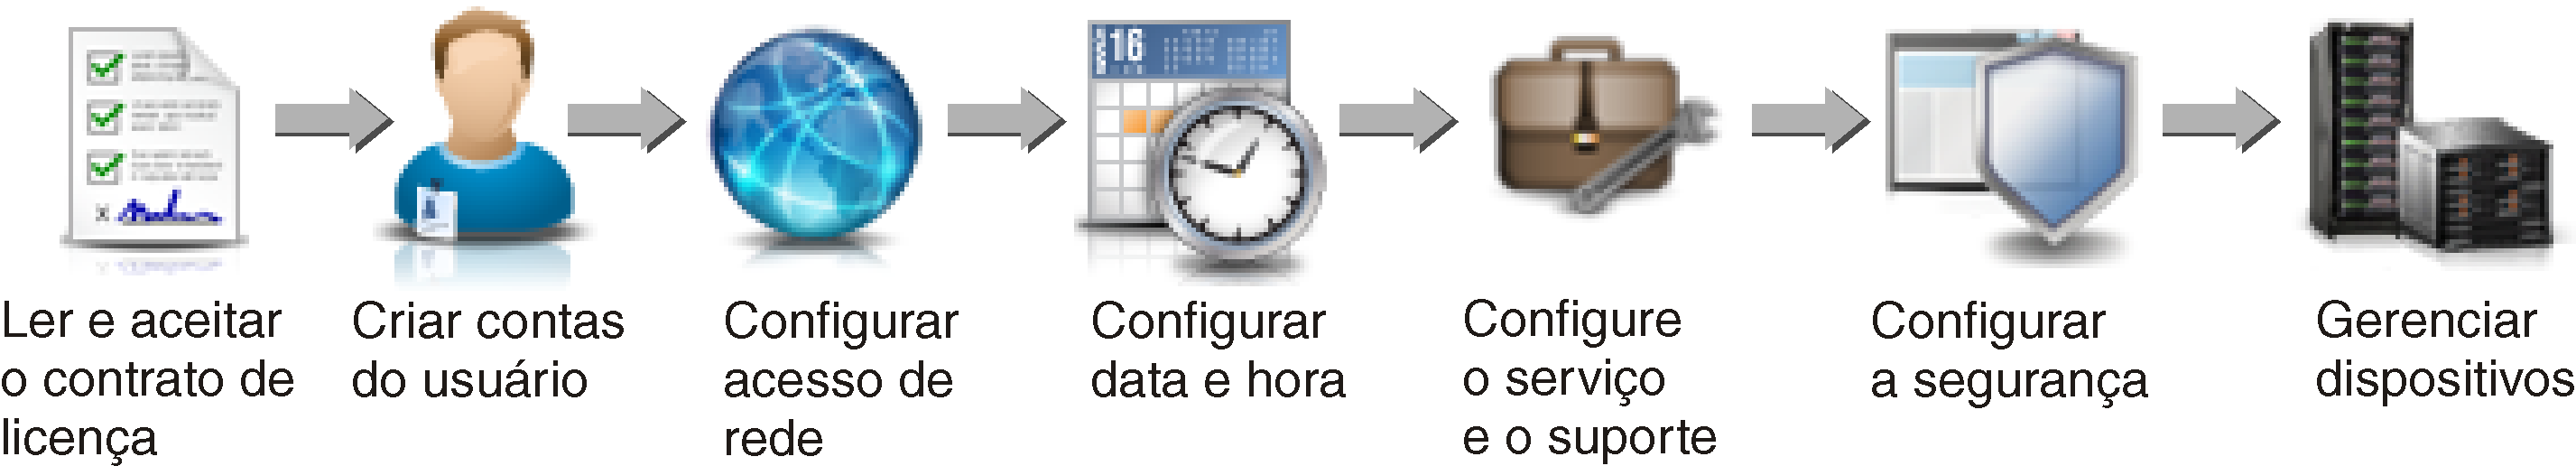 Ilustra as etapas envolvidas na configuração inicial.